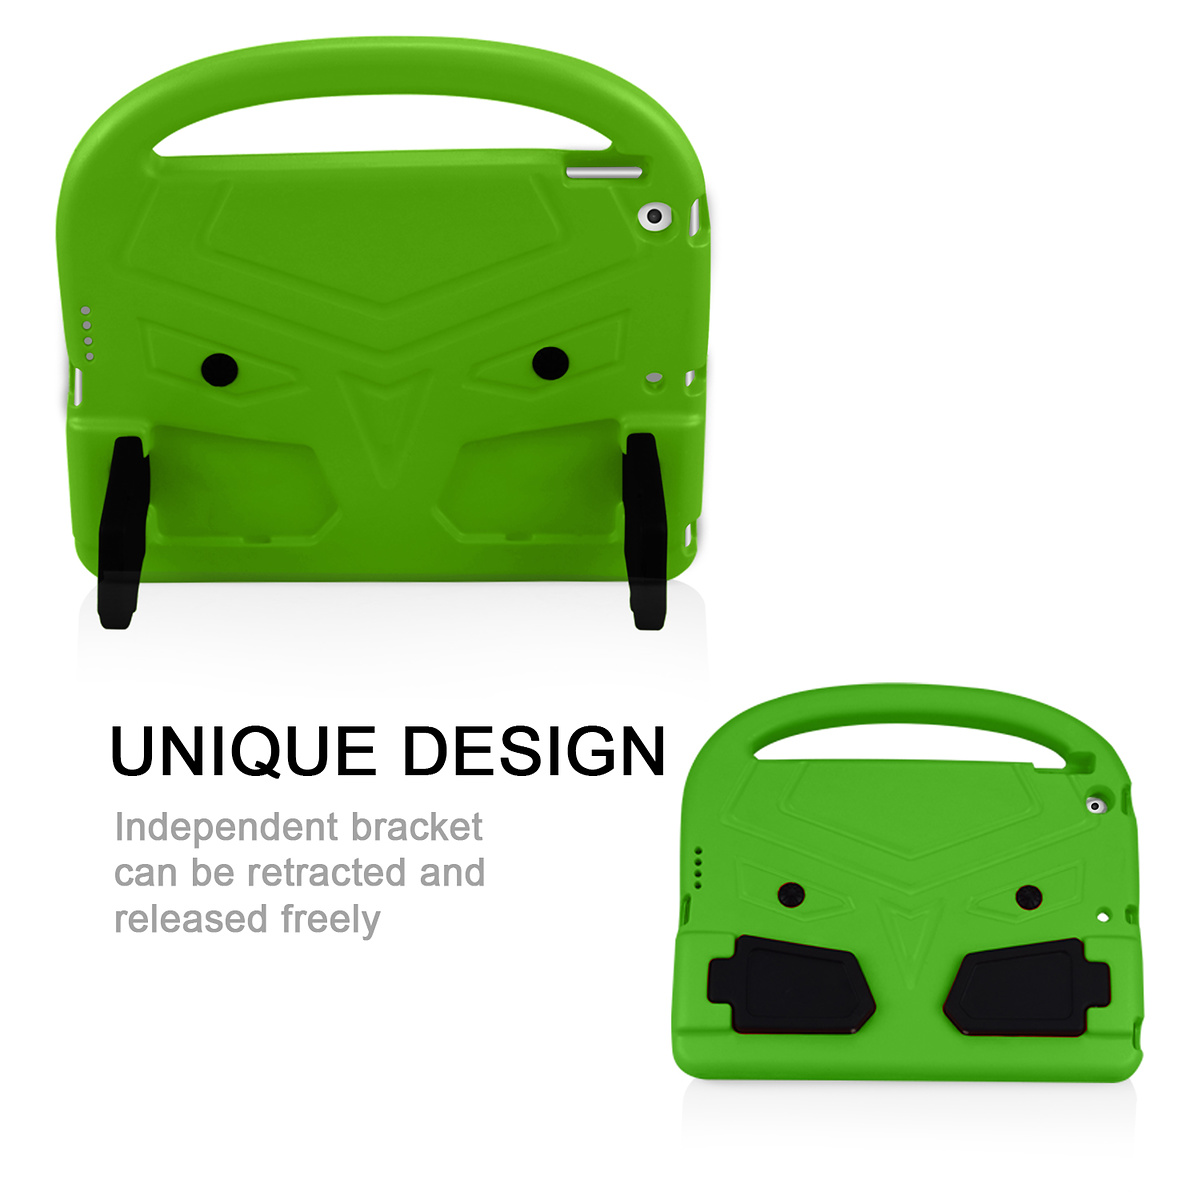 Barnfodral med ställ, iPad 10.2 / Pro 10.5 / Air 3, grön